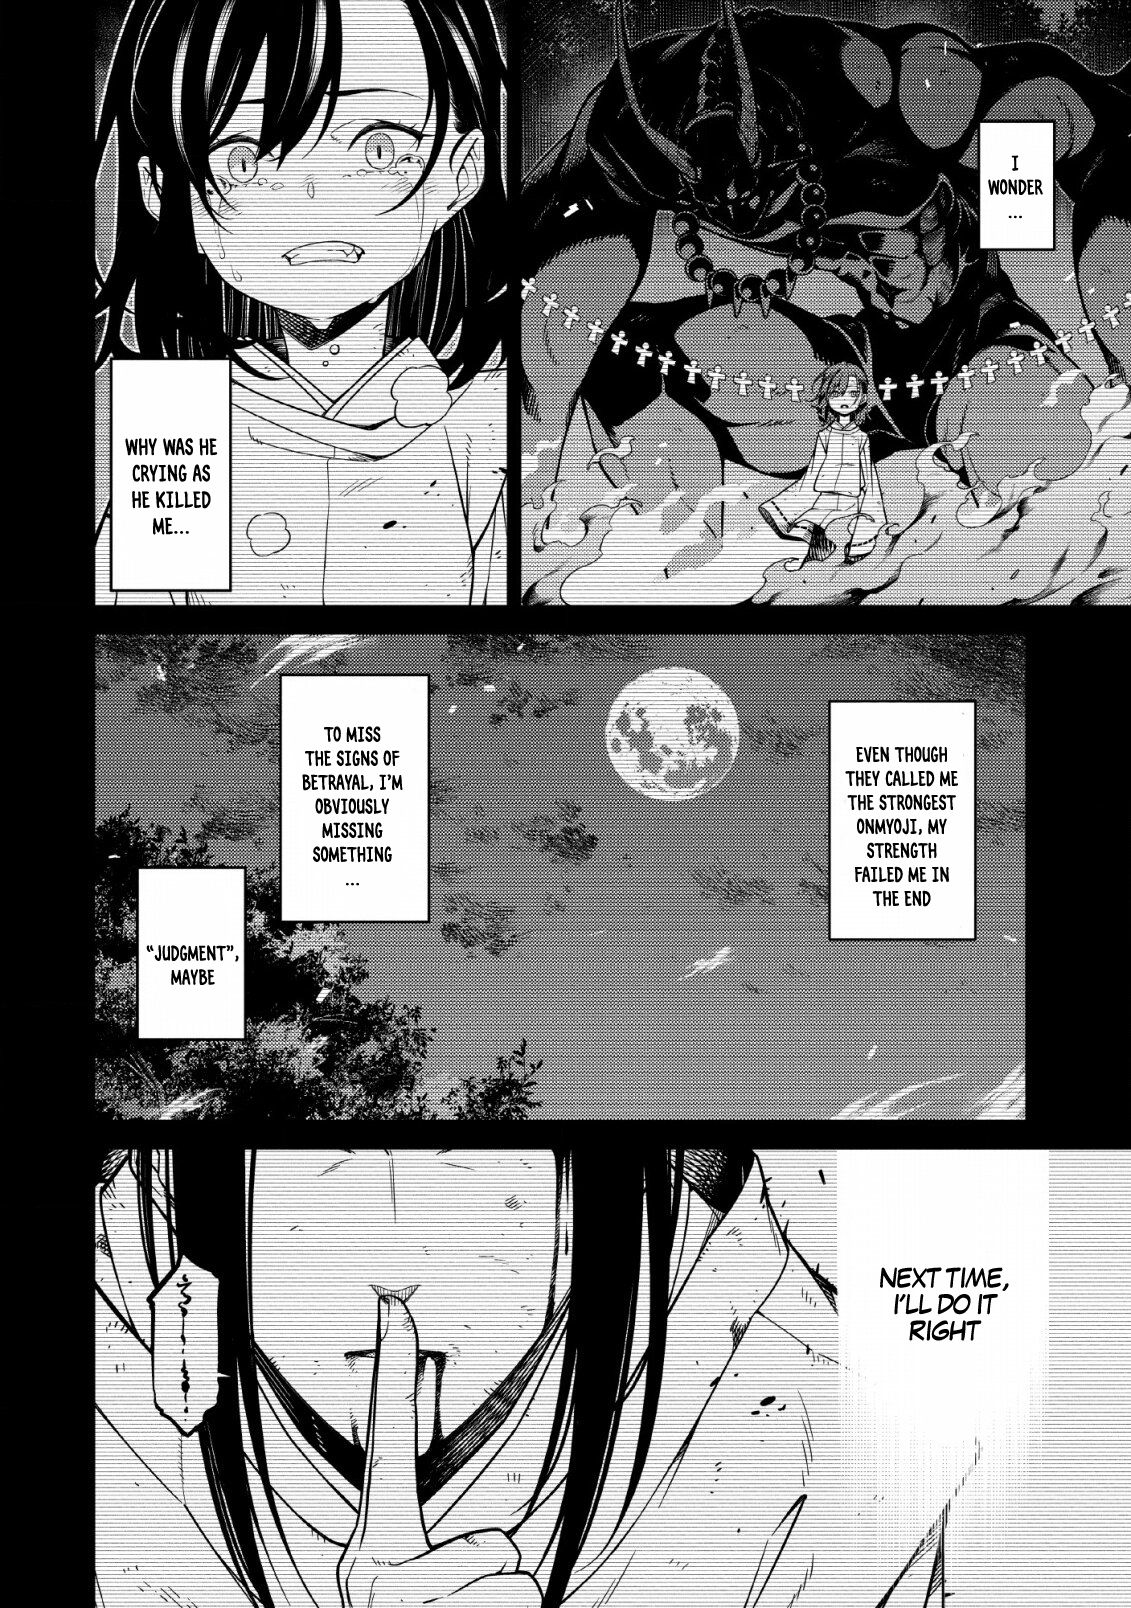 Saikyou Onmyouji no Isekai Tenseiki: Geboku no Youkaidomo ni Kurabete  Monster ga Yowaisugirundaga (Light Novel) Manga